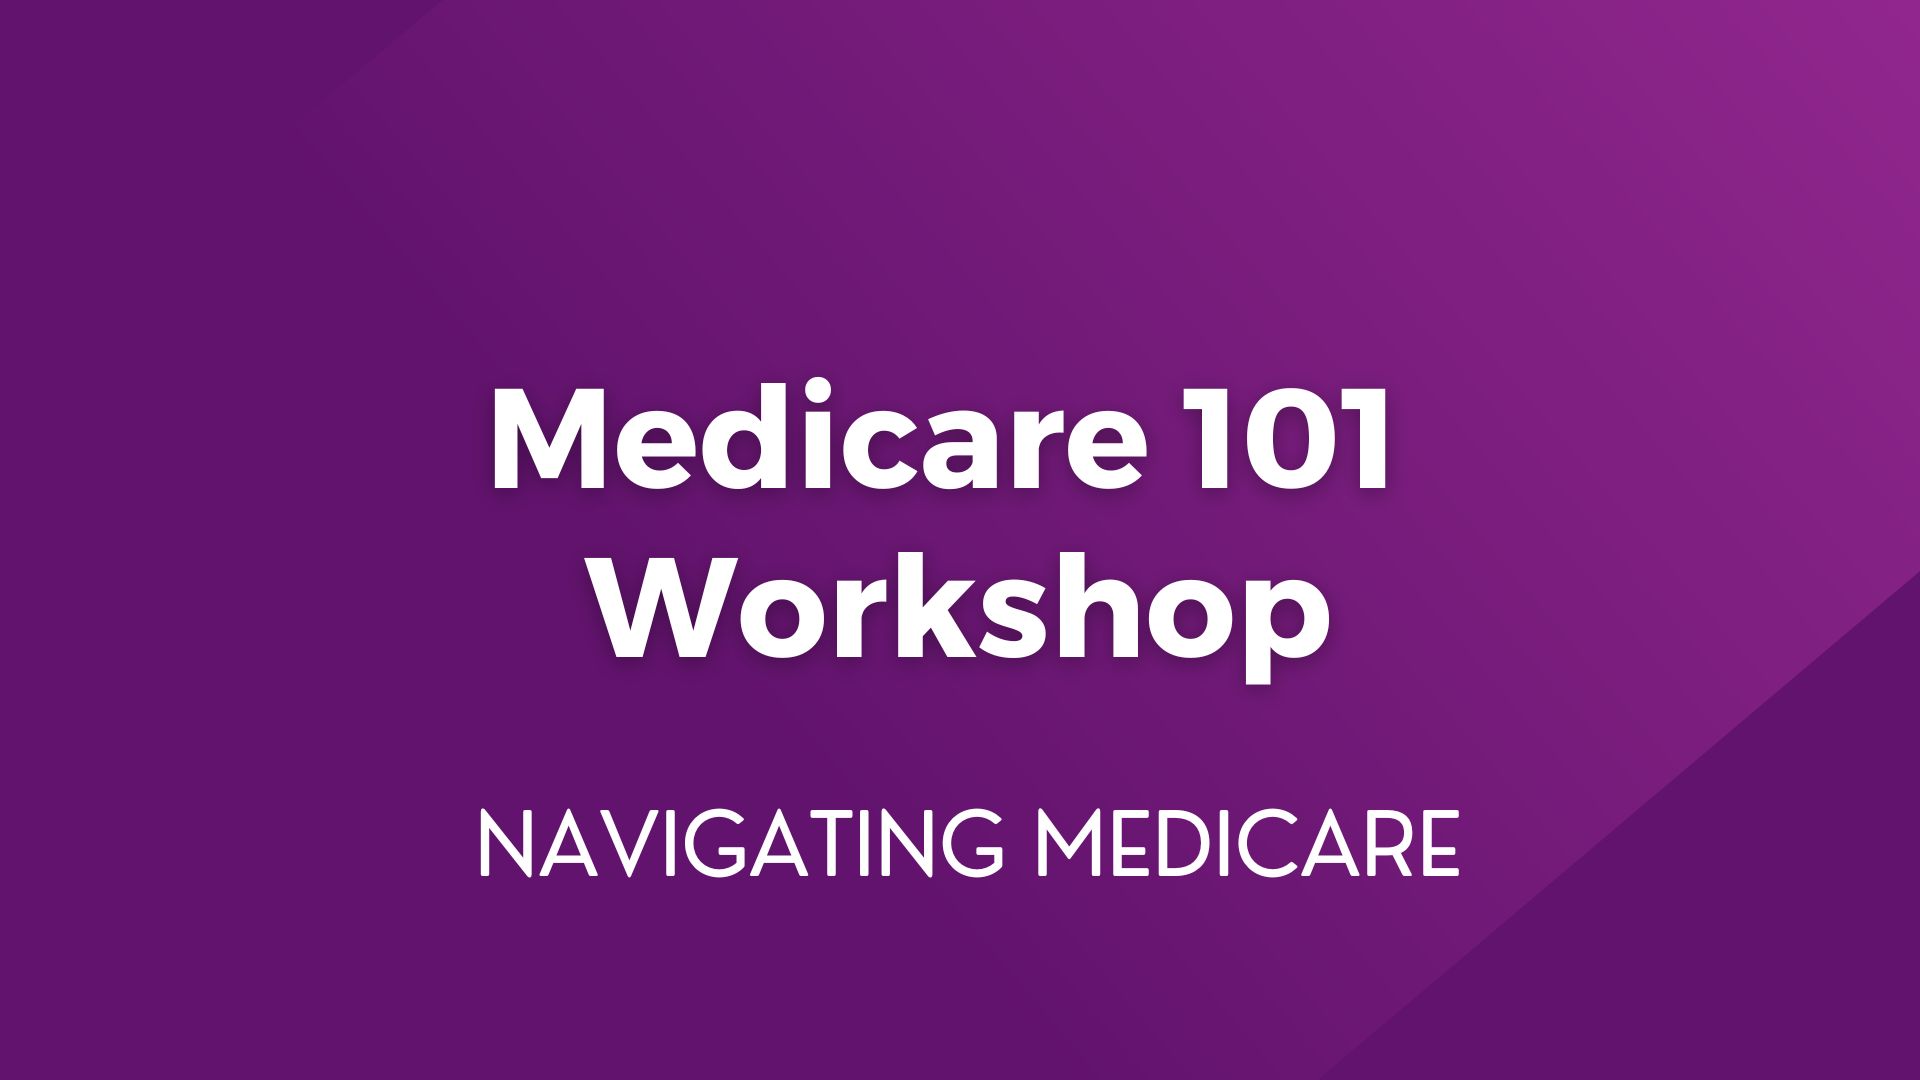 Medicare 101 Workshop – June 18